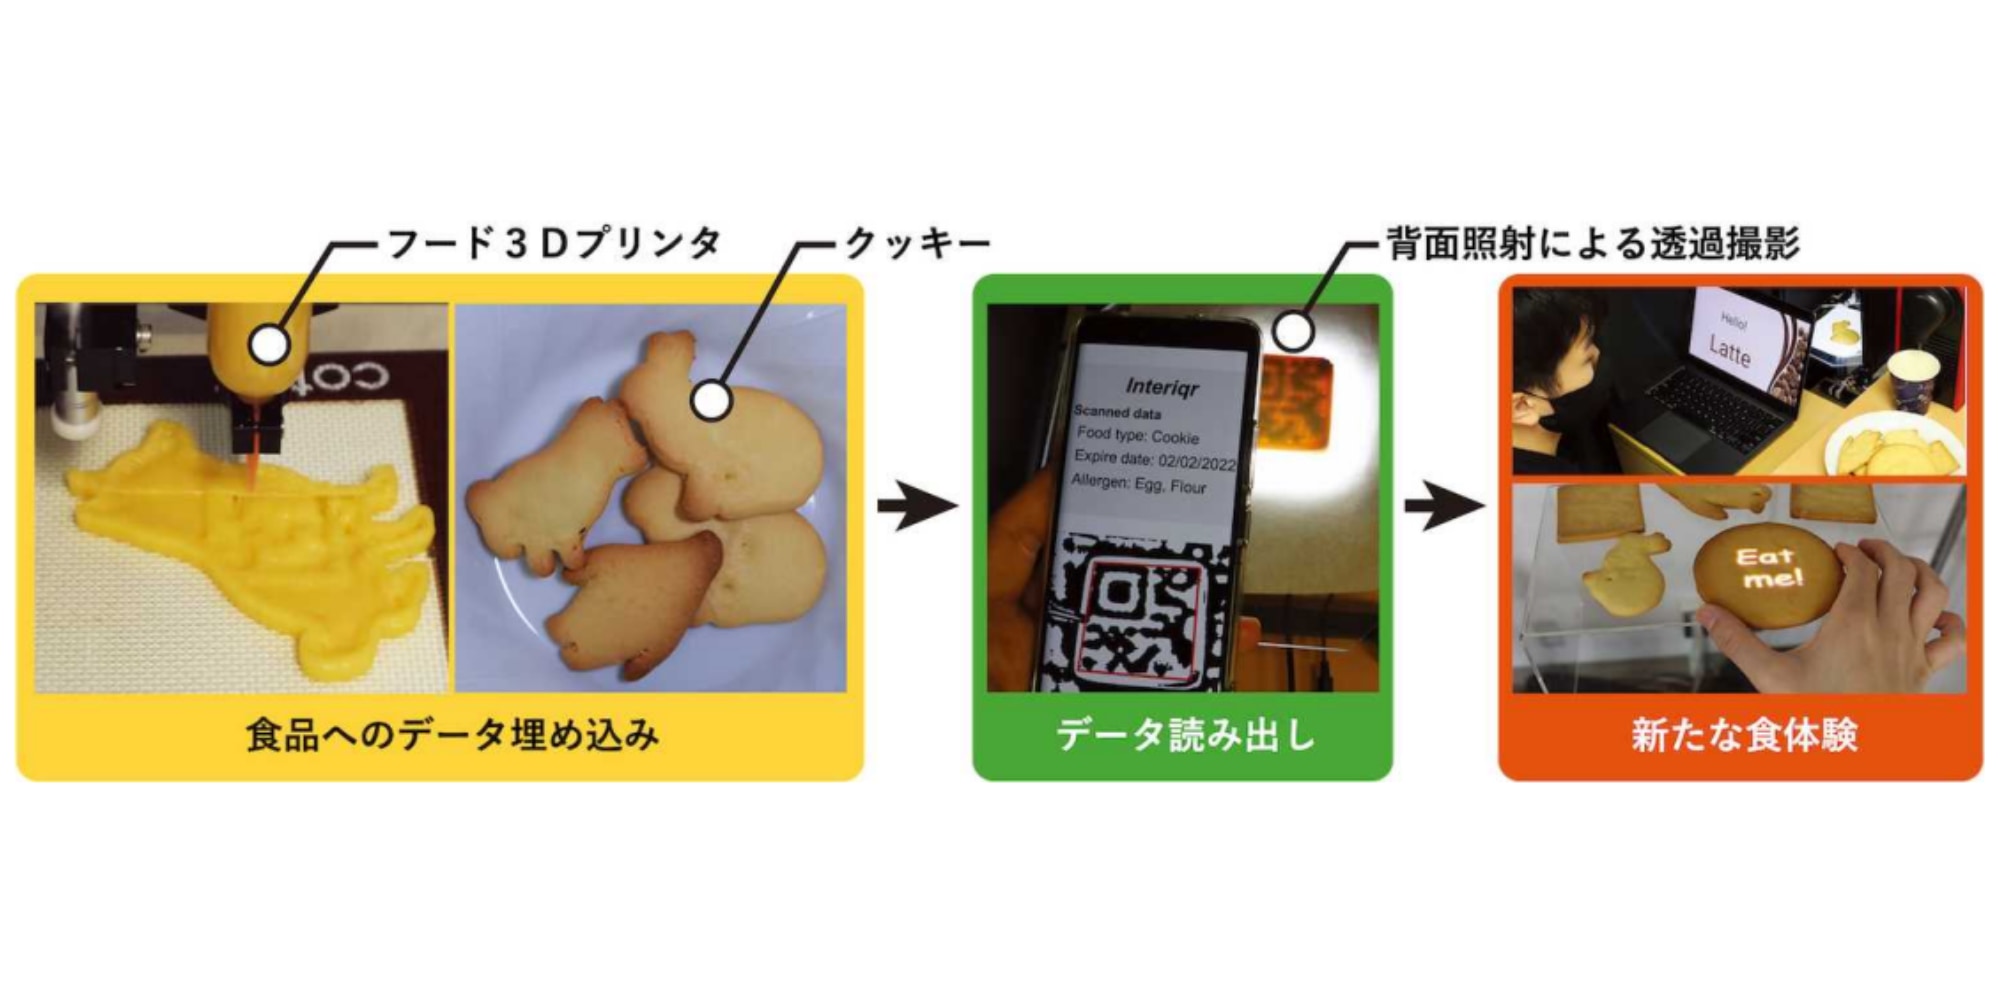 フード3Dプリンタを用いてクッキーにデータを埋め込み、2次元コードとして読み取り可能